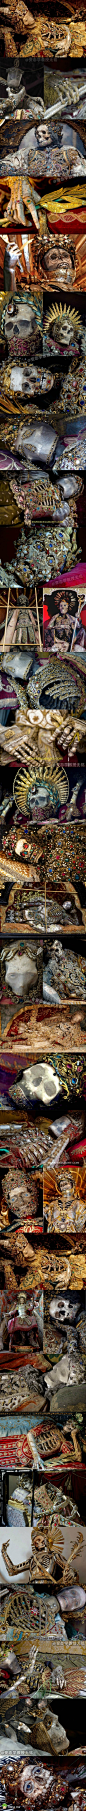 珠宝圣尸这套照片是Paul Koudounaris拍摄的17世纪左右死掉的圣人的遗体～相当华丽 #文物#